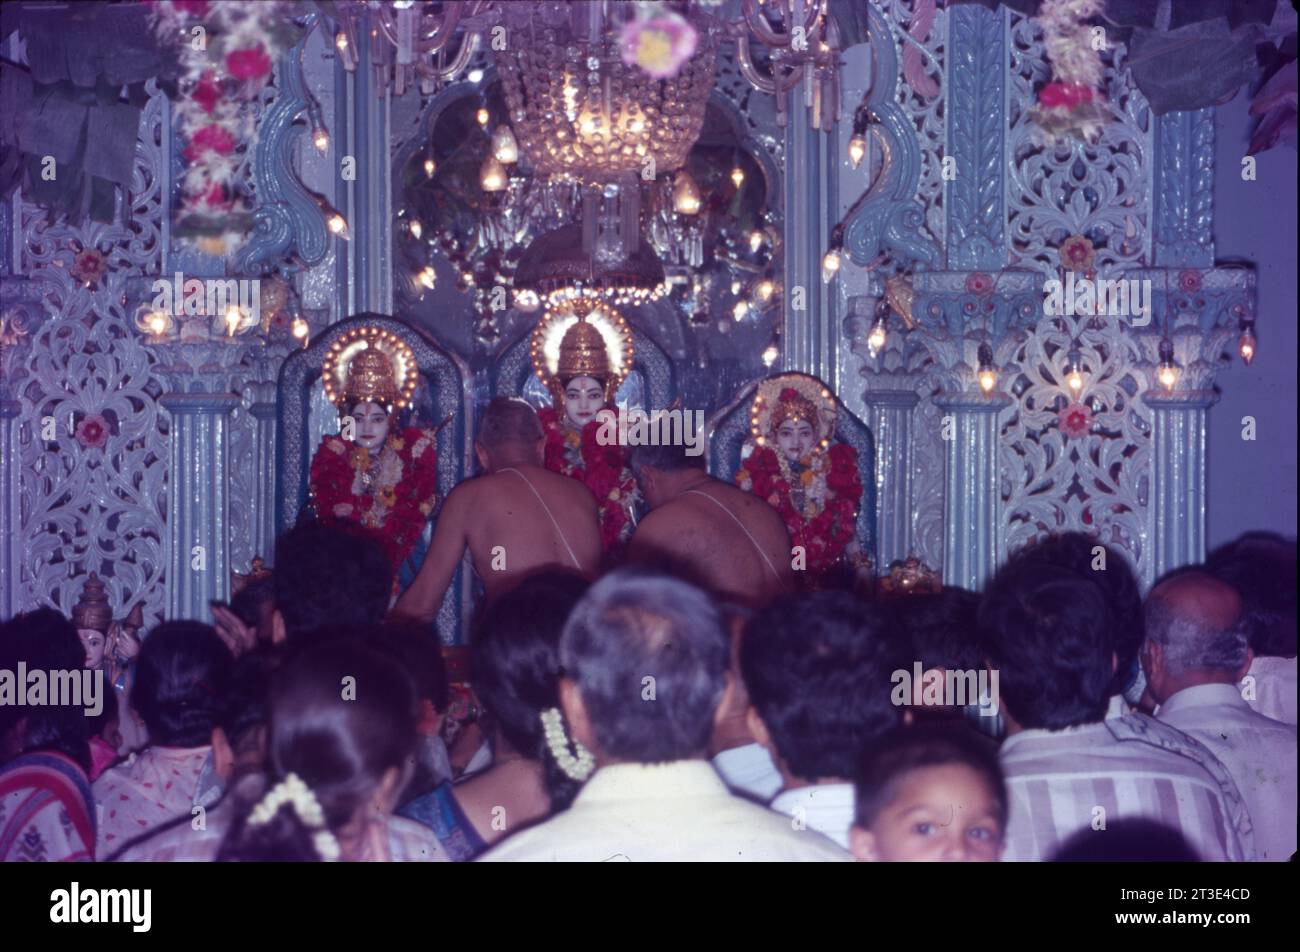 RAM Navmi célébration dans le temple de Nasik, Maharashtra, Inde. Banque D'Images